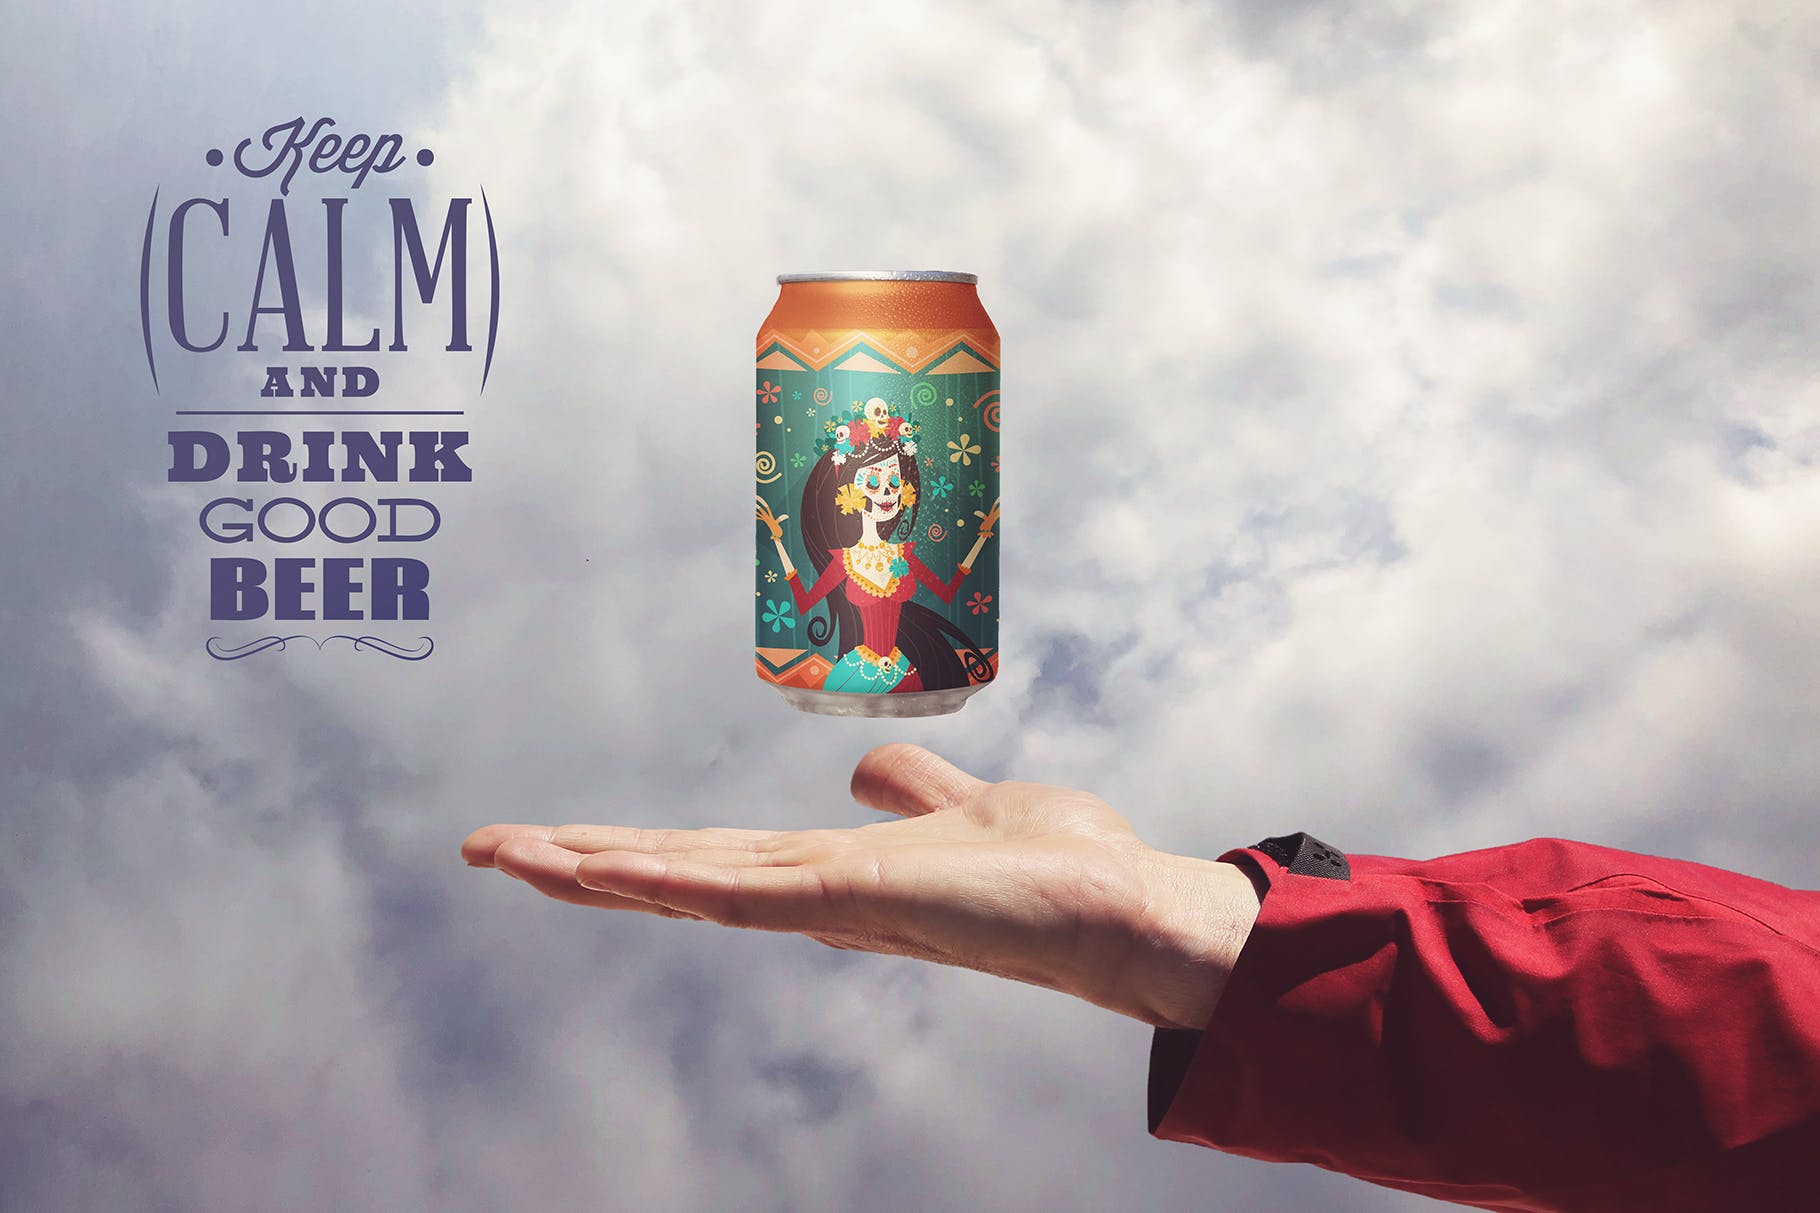 易拉罐装啤酒瓶碳酸饮料瓶外观设计第一素材精选 Heavenly Beer Can Mockup插图(2)